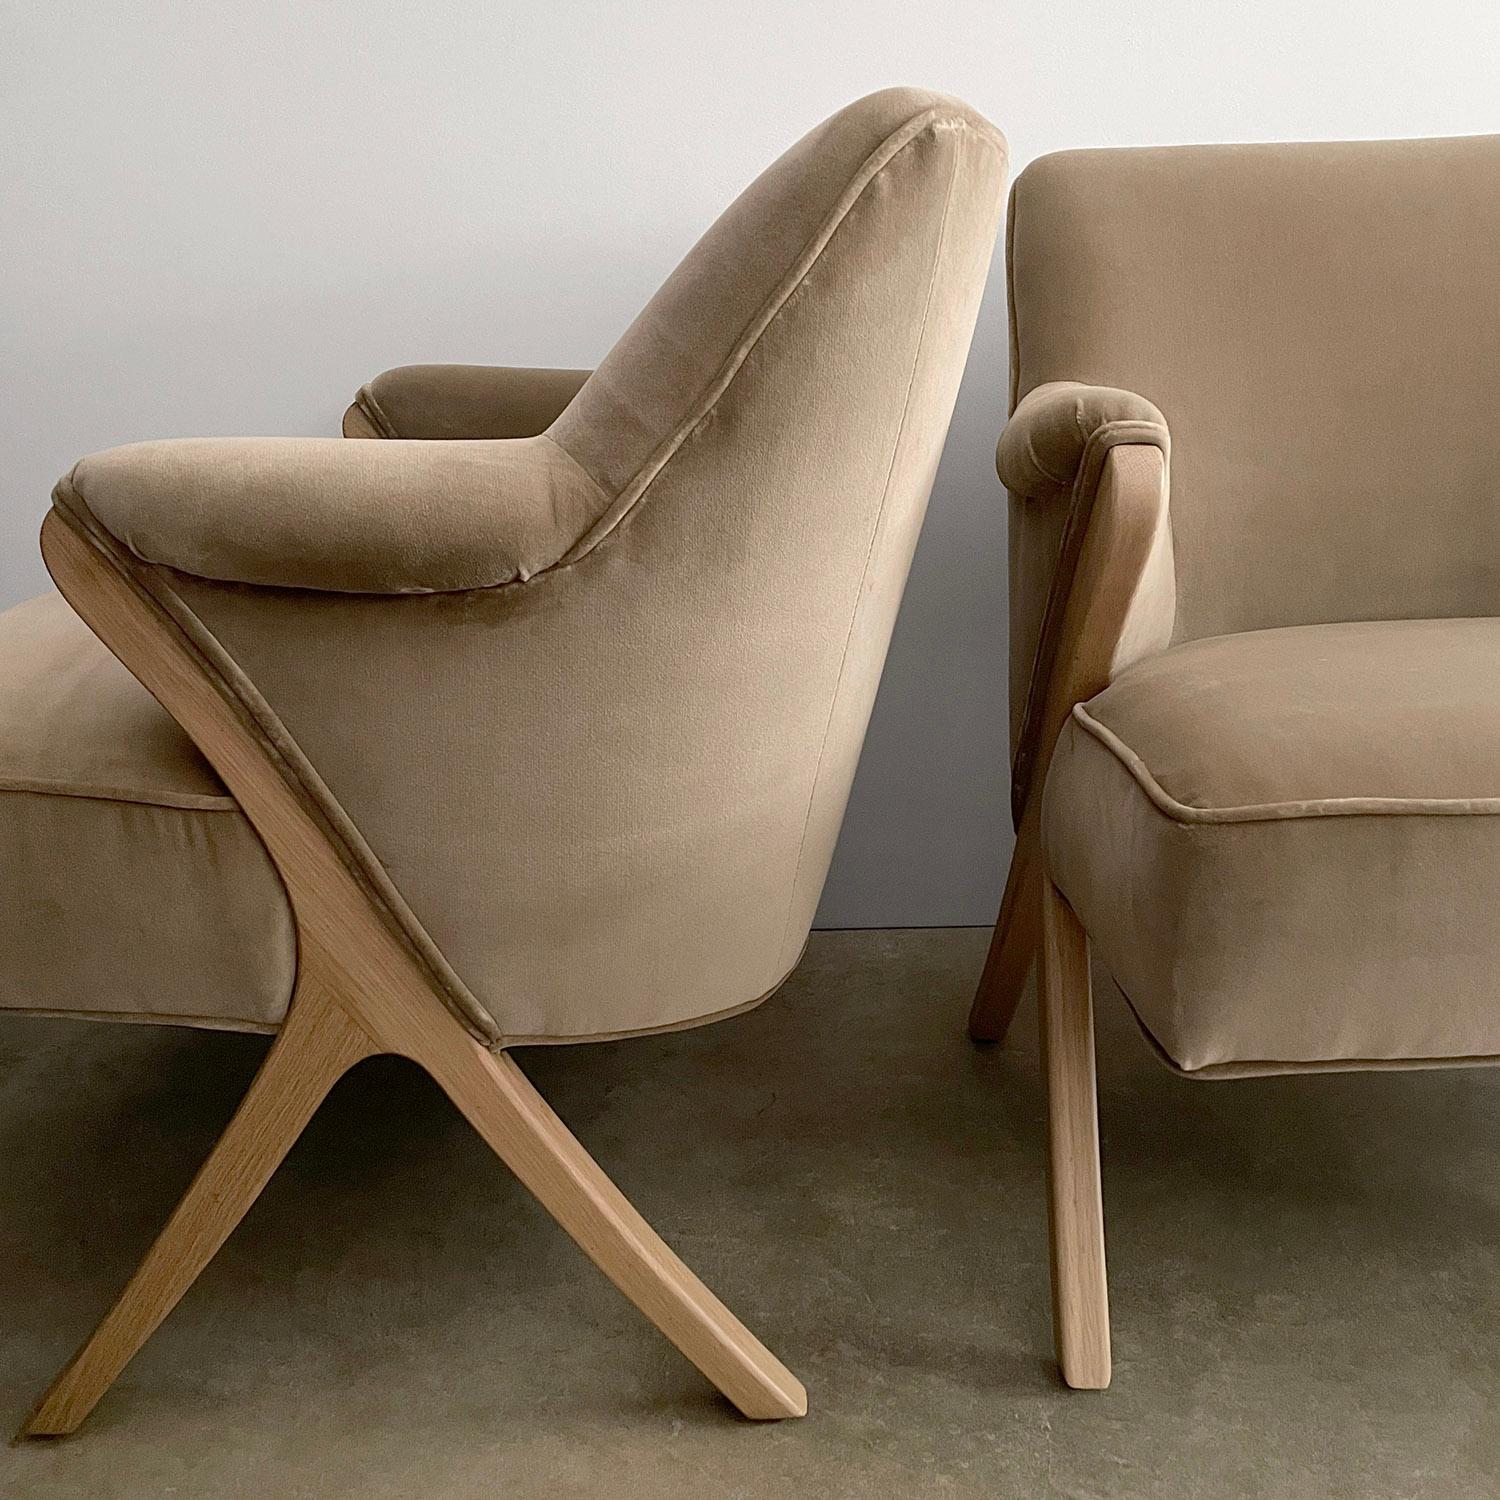 Paar französische Sessel aus den 1940er Jahren
Dieser Stuhl ist aus allen Blickwinkeln schön
Neu gepolstert mit einem strukturierten italienischen Samtstoff
Die wunderschön geformten, gespreizten Querlenker sind aus massiver Weißeiche gefertigt.